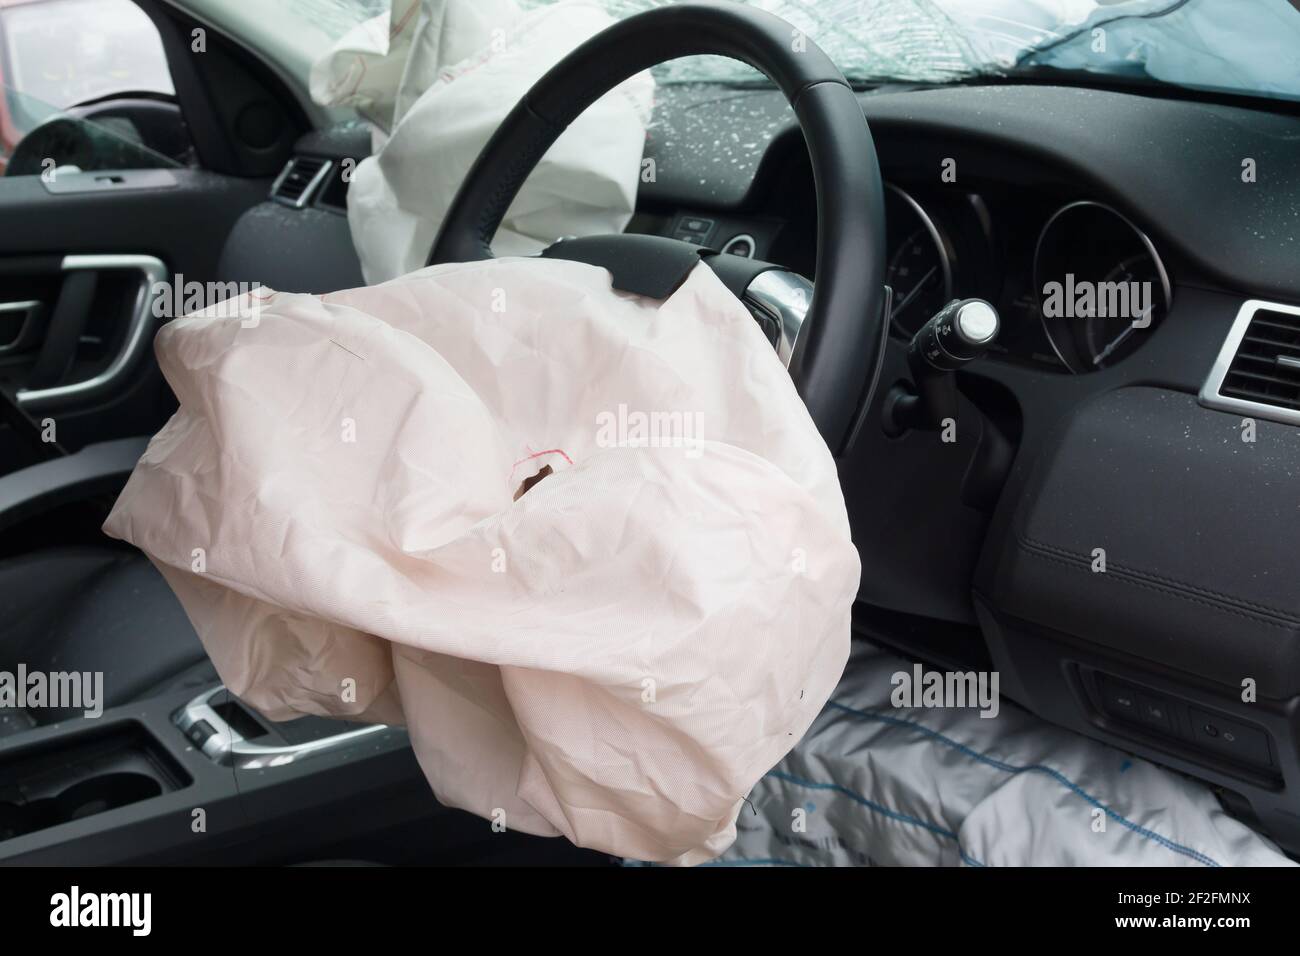 Interno di un automobile o vettura coinvolta in un incidente del veicolo con una struttura distribuita di piantone dello sterzo airbag Foto Stock